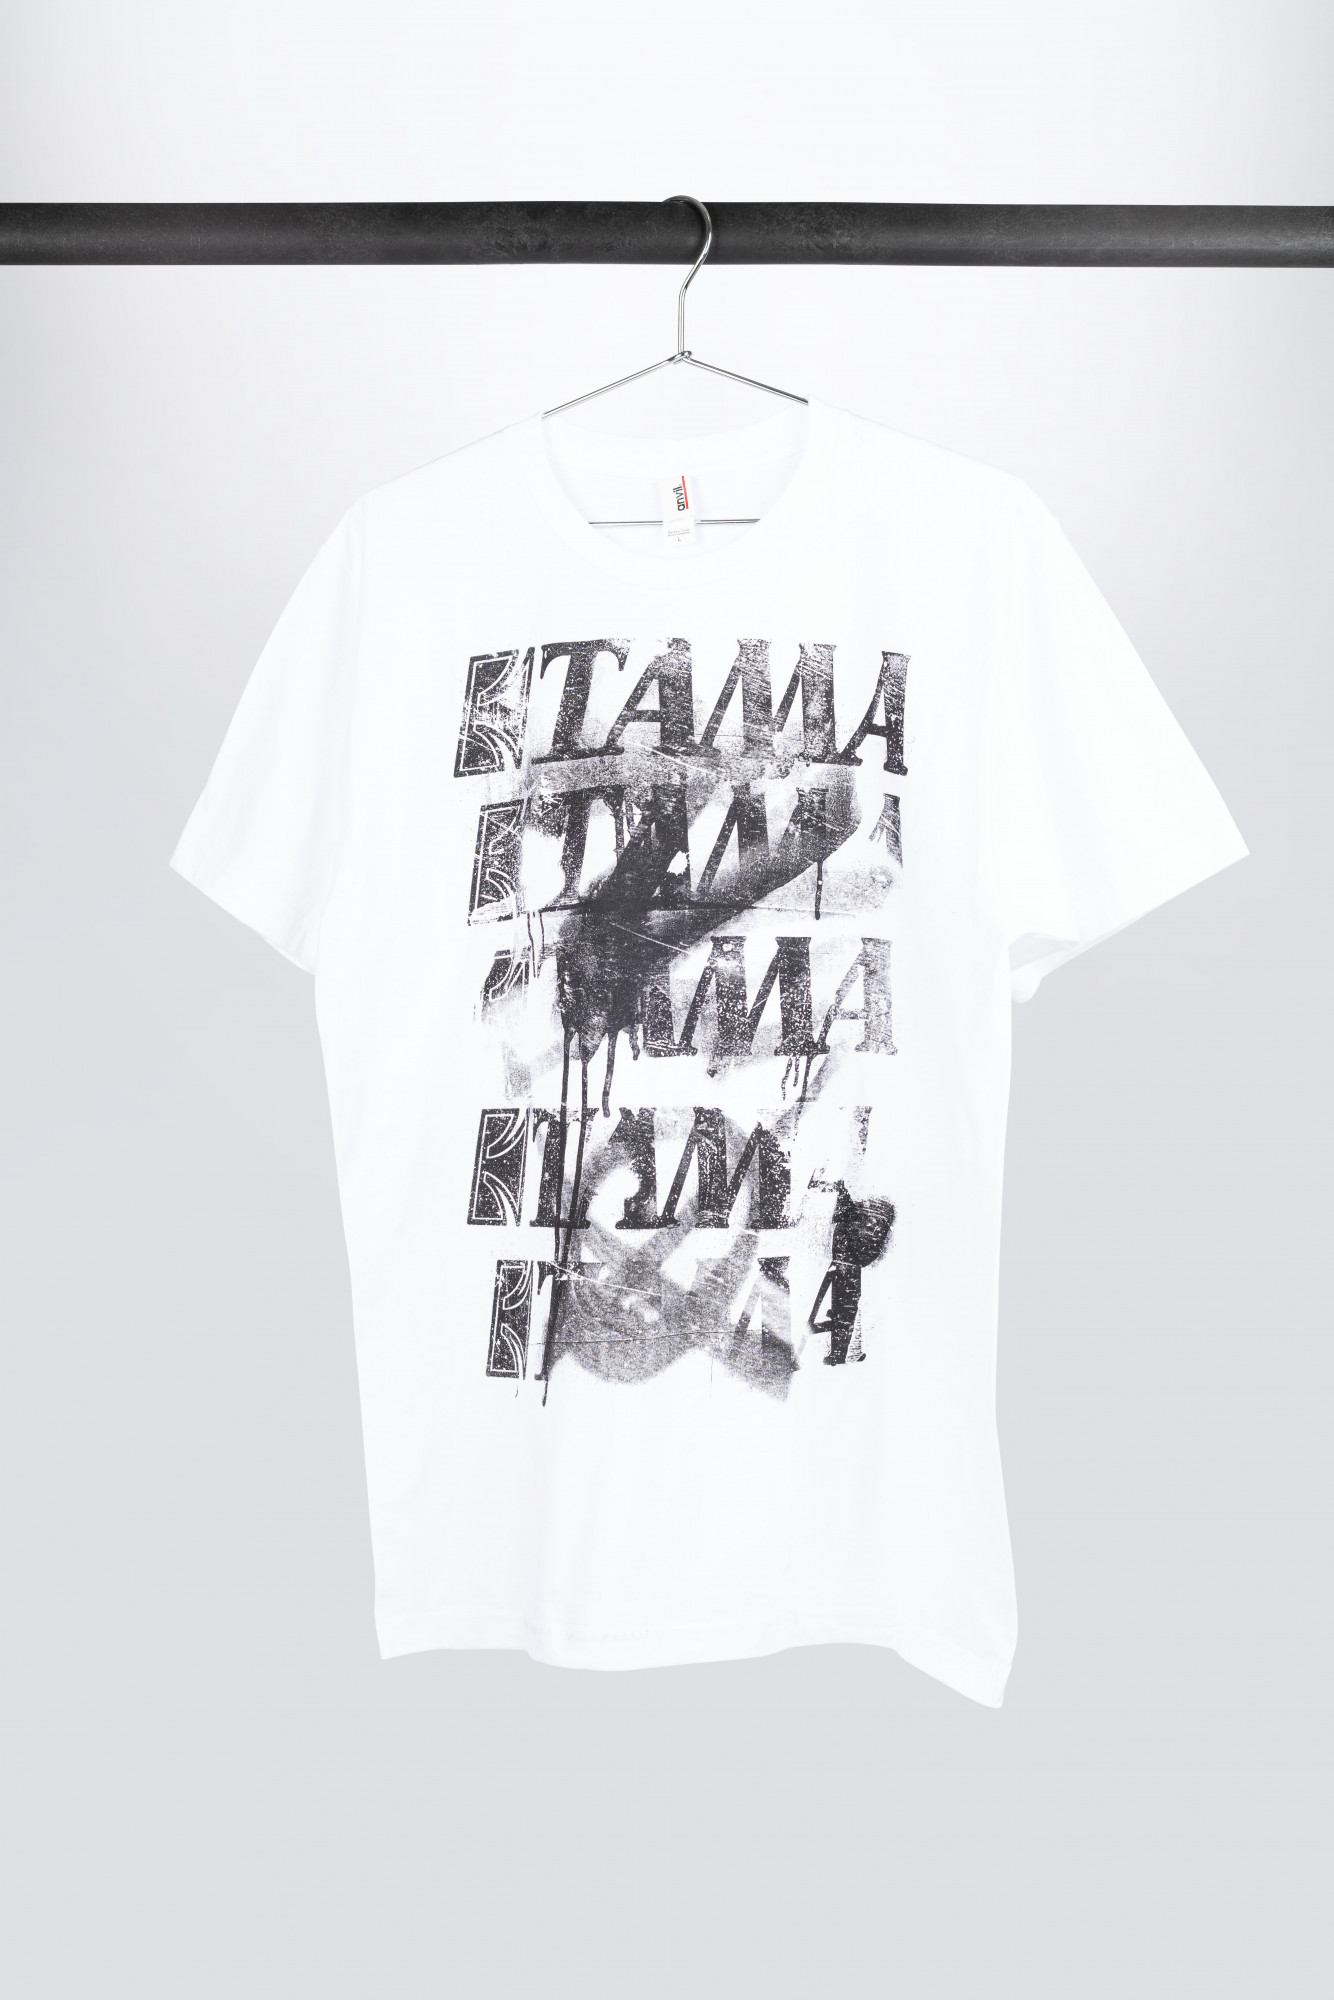 TAMA T-Shirt in Spray weiß Shop | | SALE Frontprint (TT10GHET) MEINL Paint mit